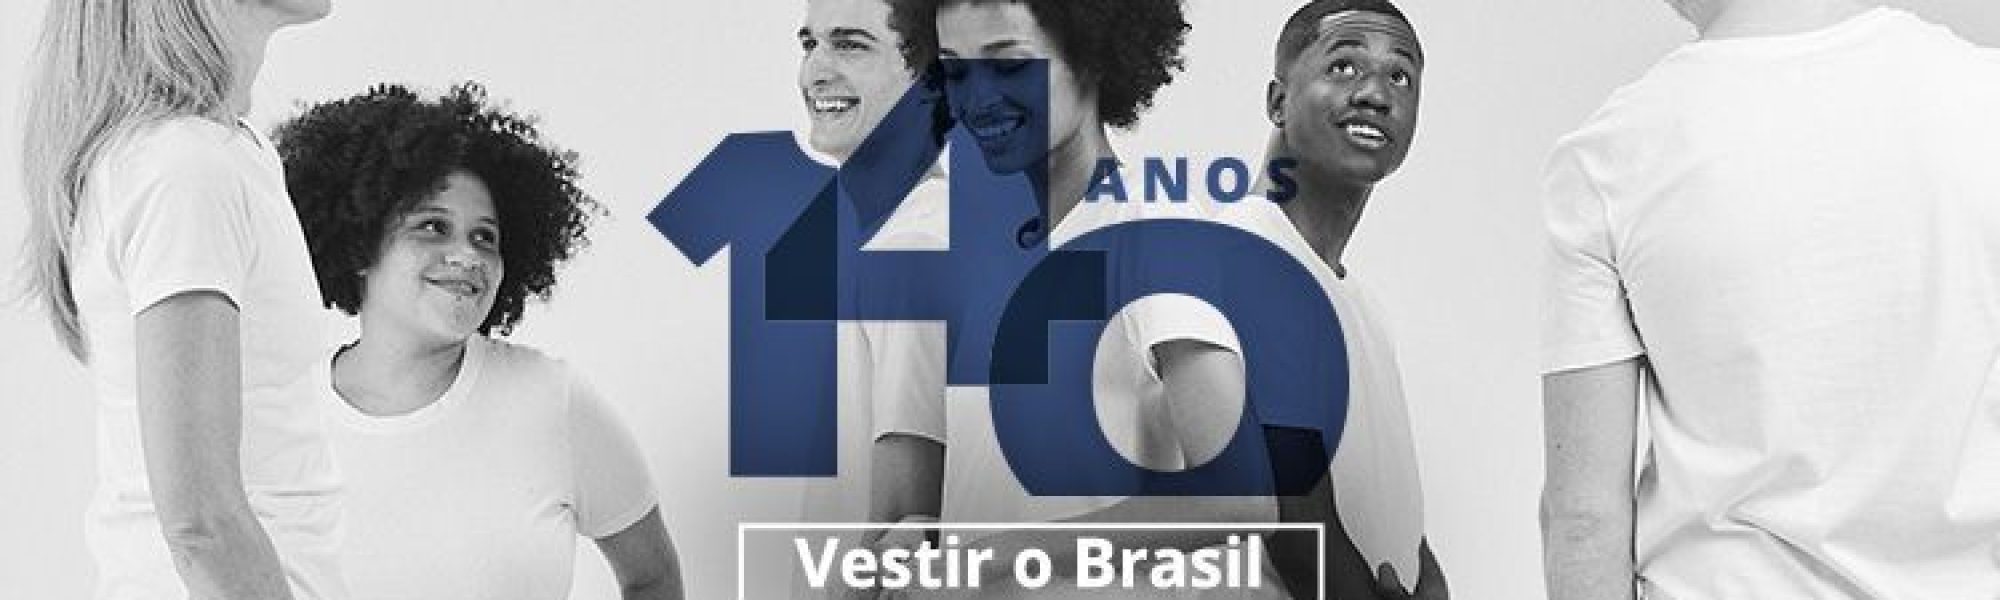 Vestir o brasil 140 anos